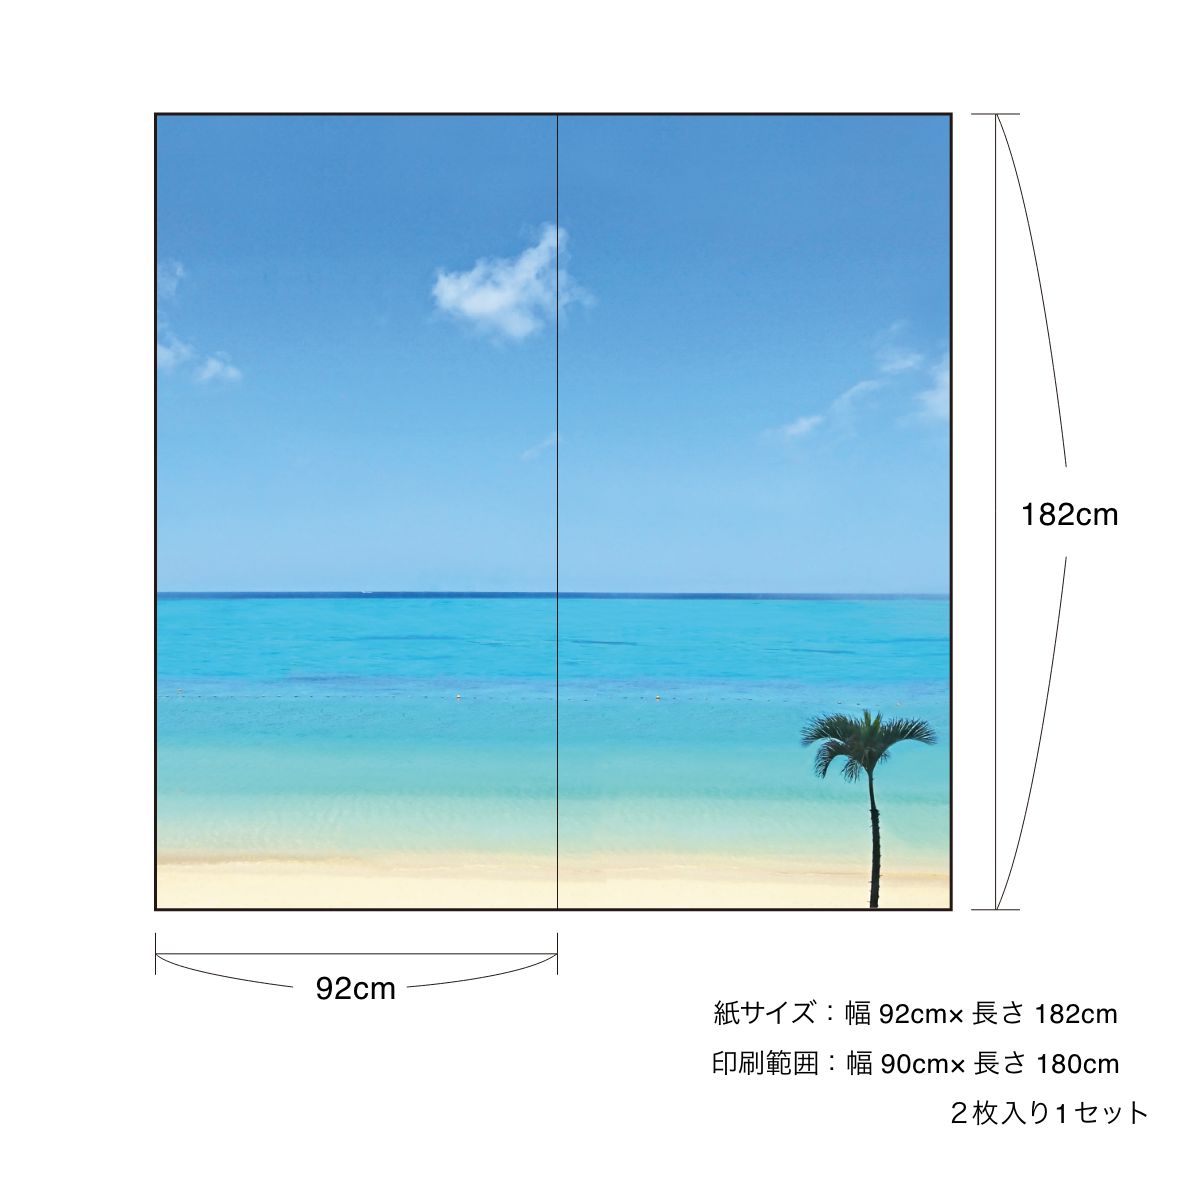 海模様 Horizon blue 襖紙 92cm×182cm 2枚入り 水貼りタイプ アサヒペン 自然 海 水平線 波 柄 和室 洋室 洋風 モダン インテリア sea-01F